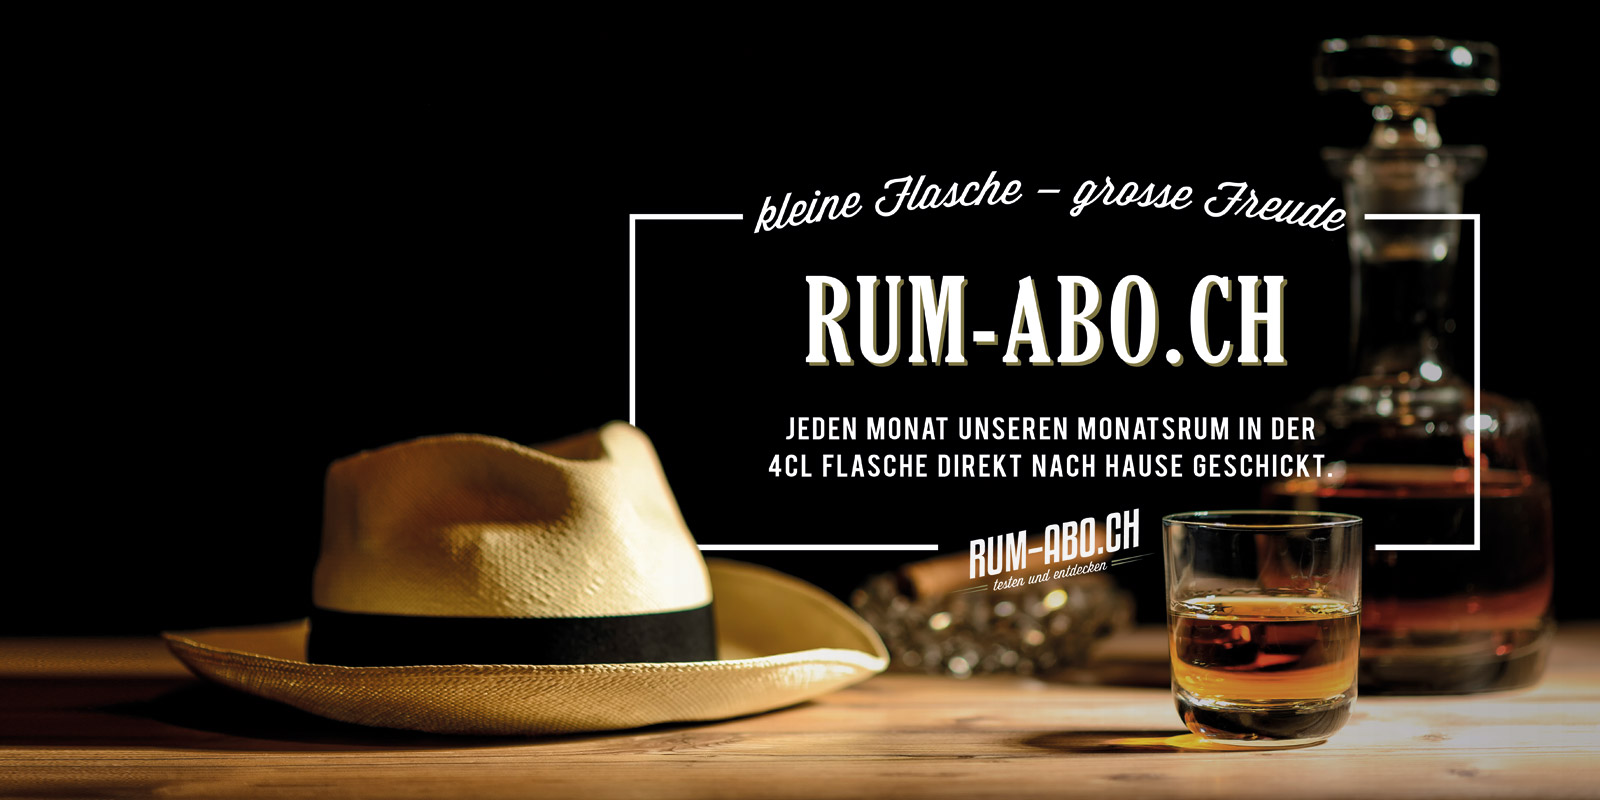 (c) Rum-abo.ch